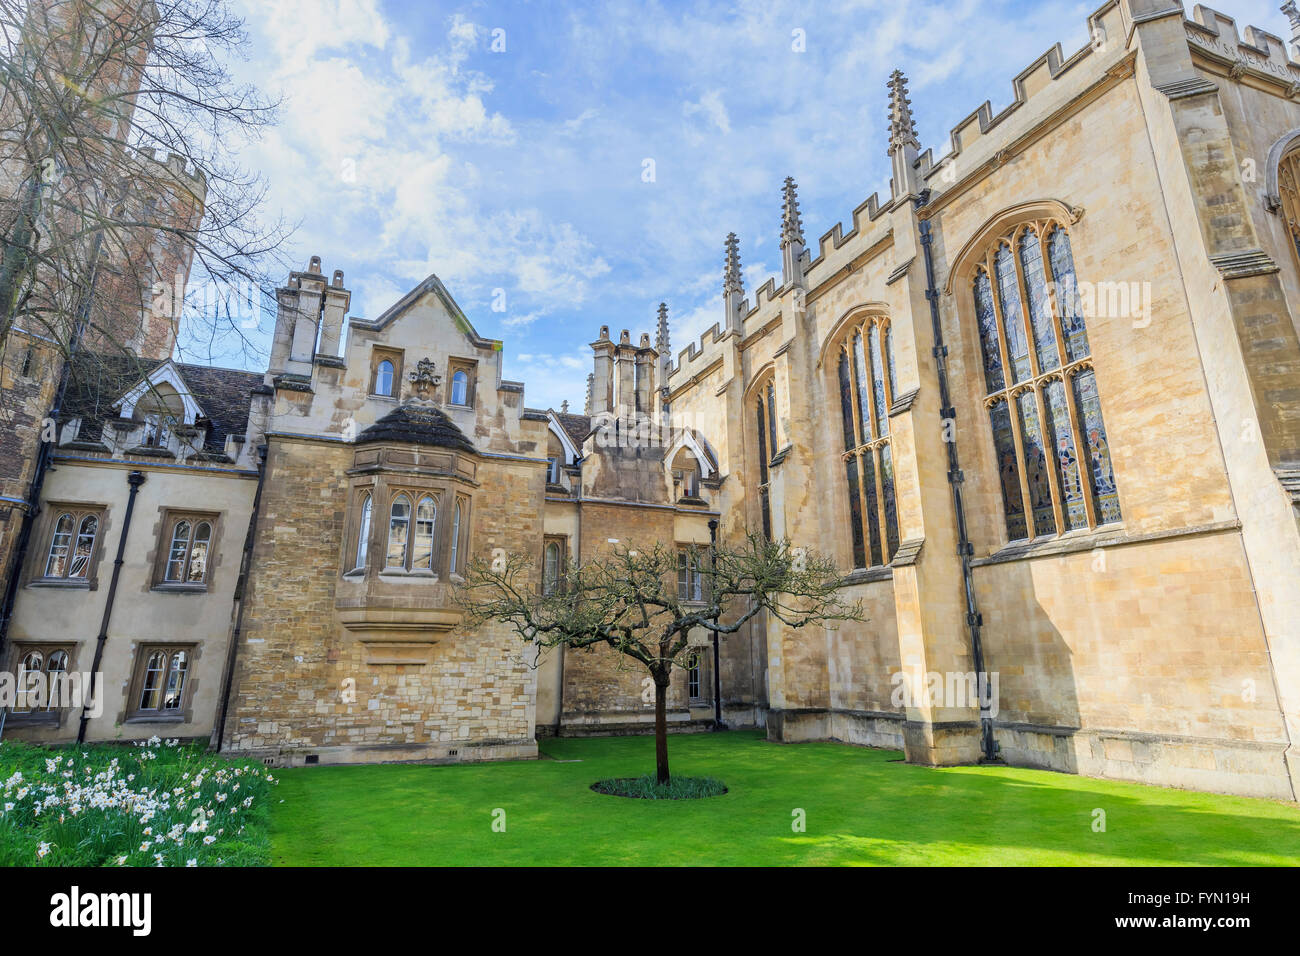 Der berühmten Newtonschen Apfelbaum an der Universität Cambridge, Großbritannien Stockfoto